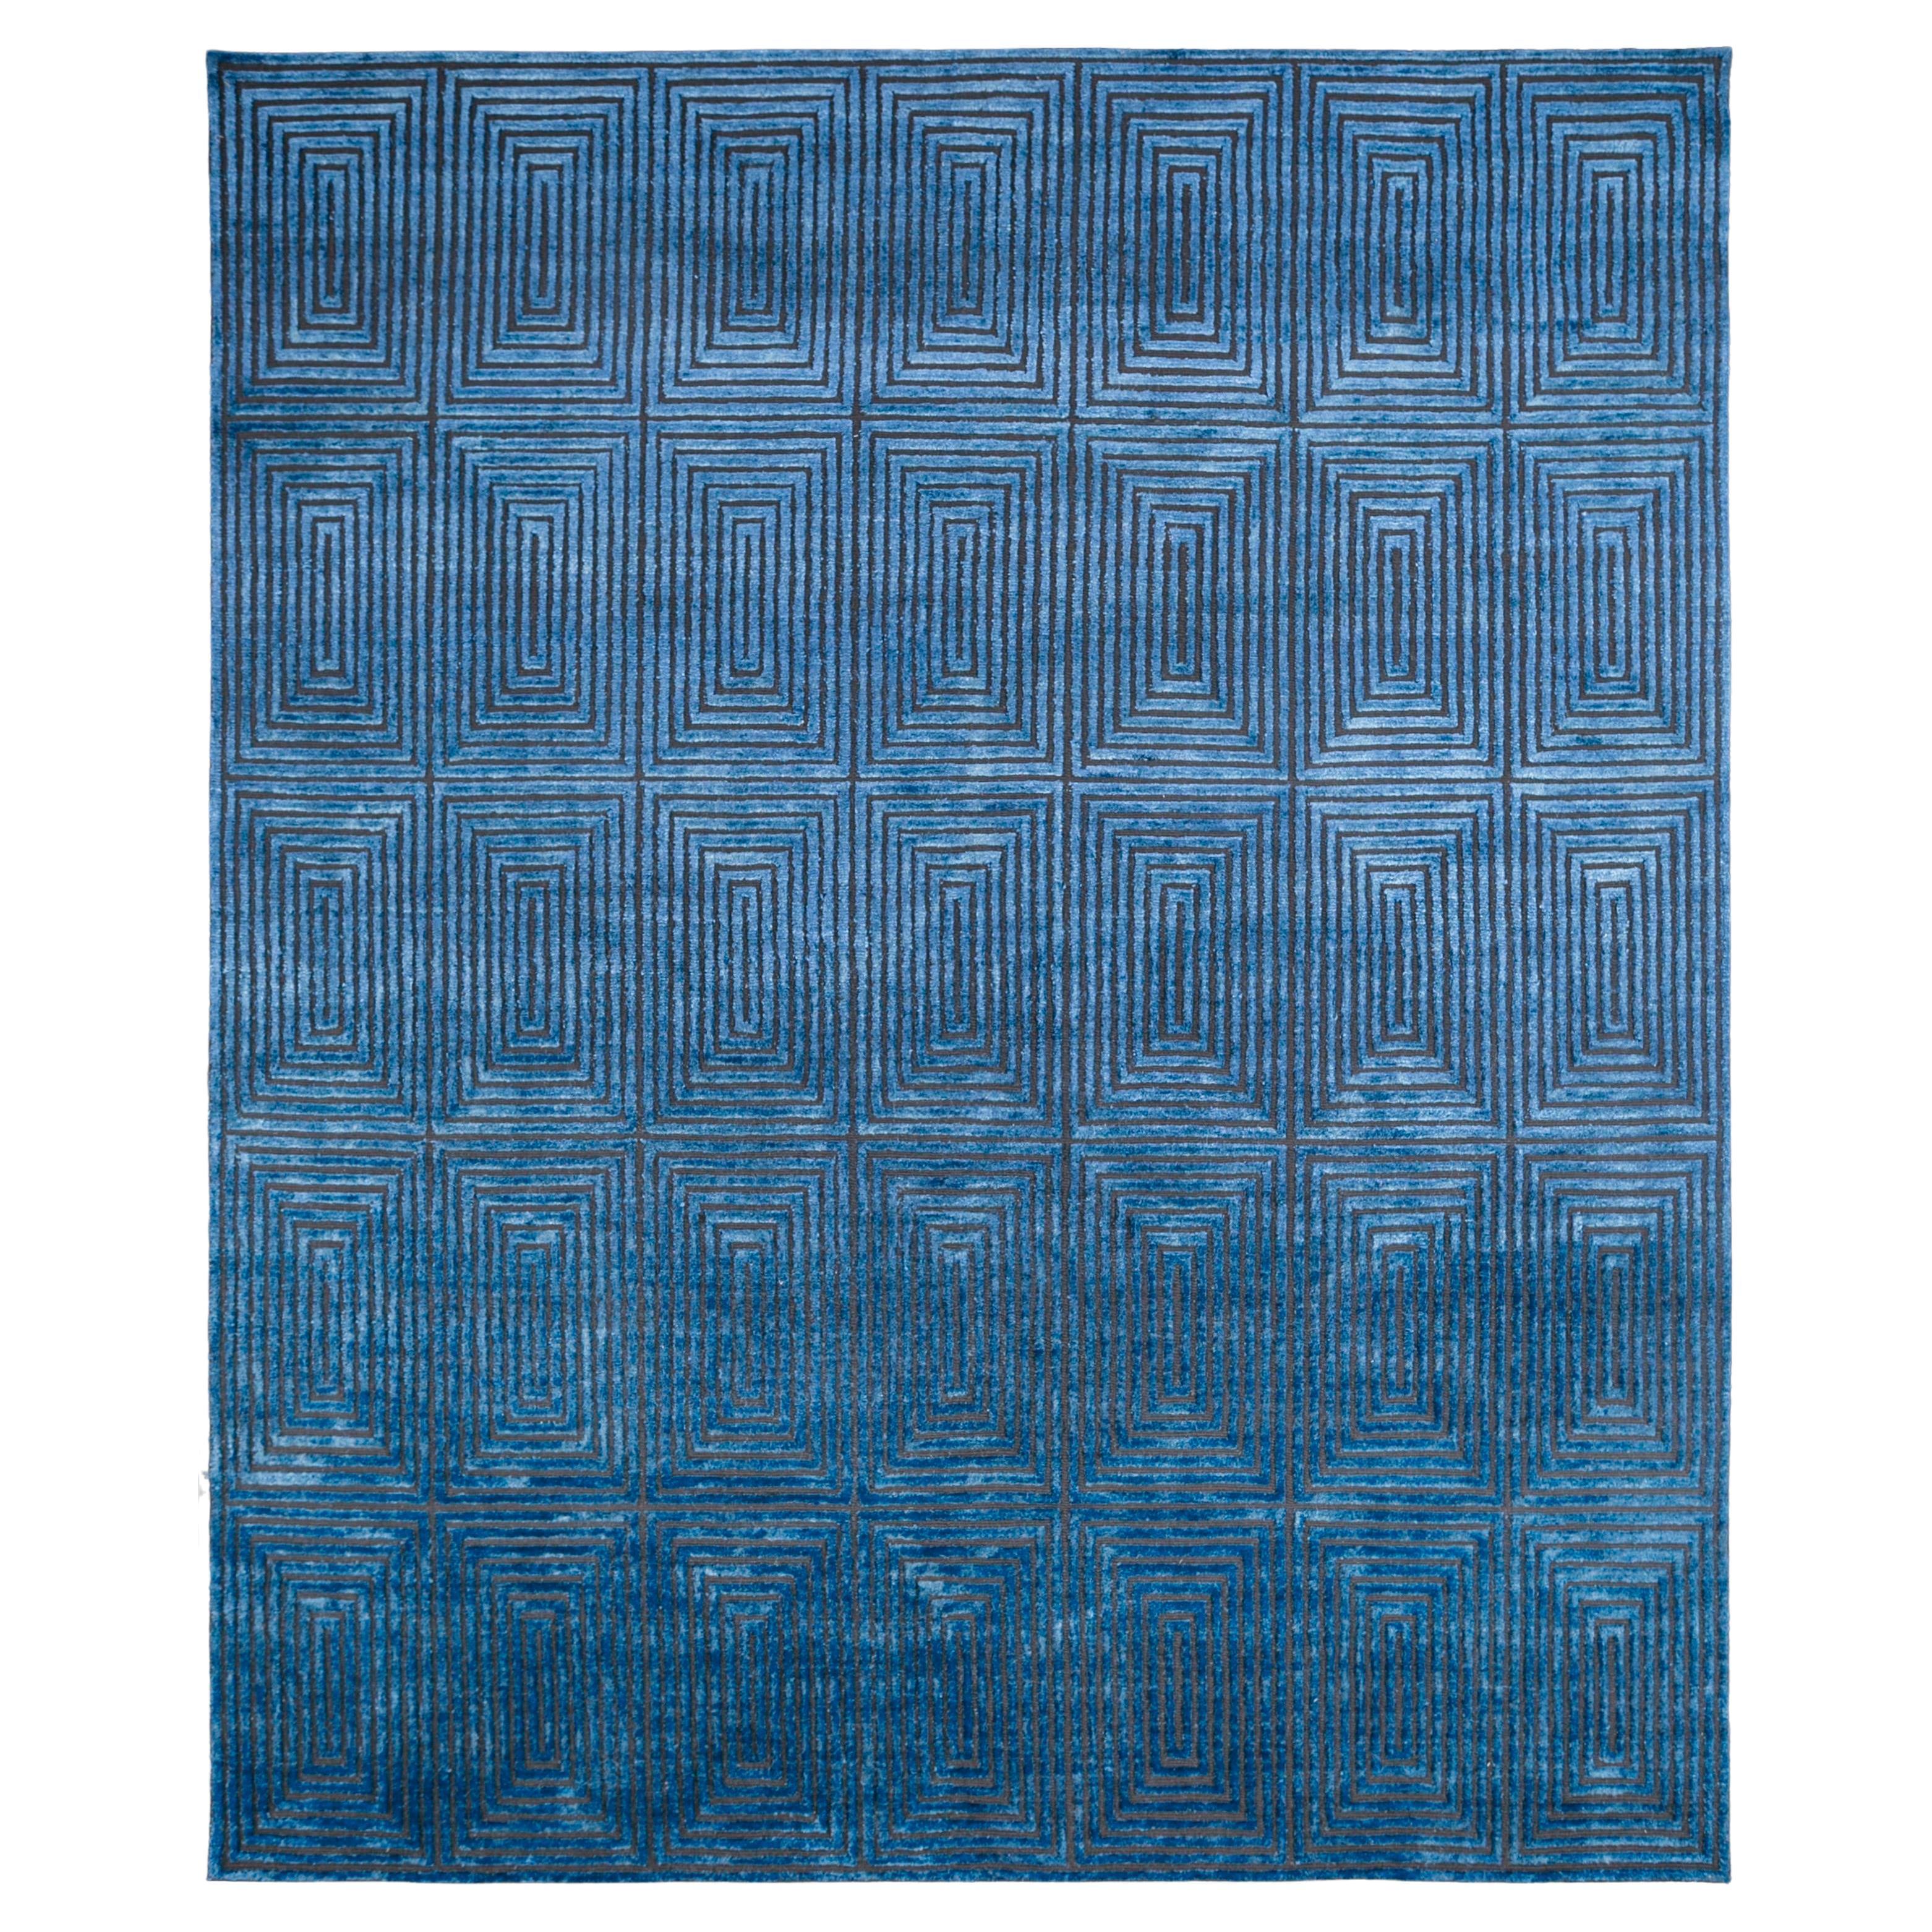  Tapis de tisserands rurals, noué, laine, soie, 240 x 300 cm